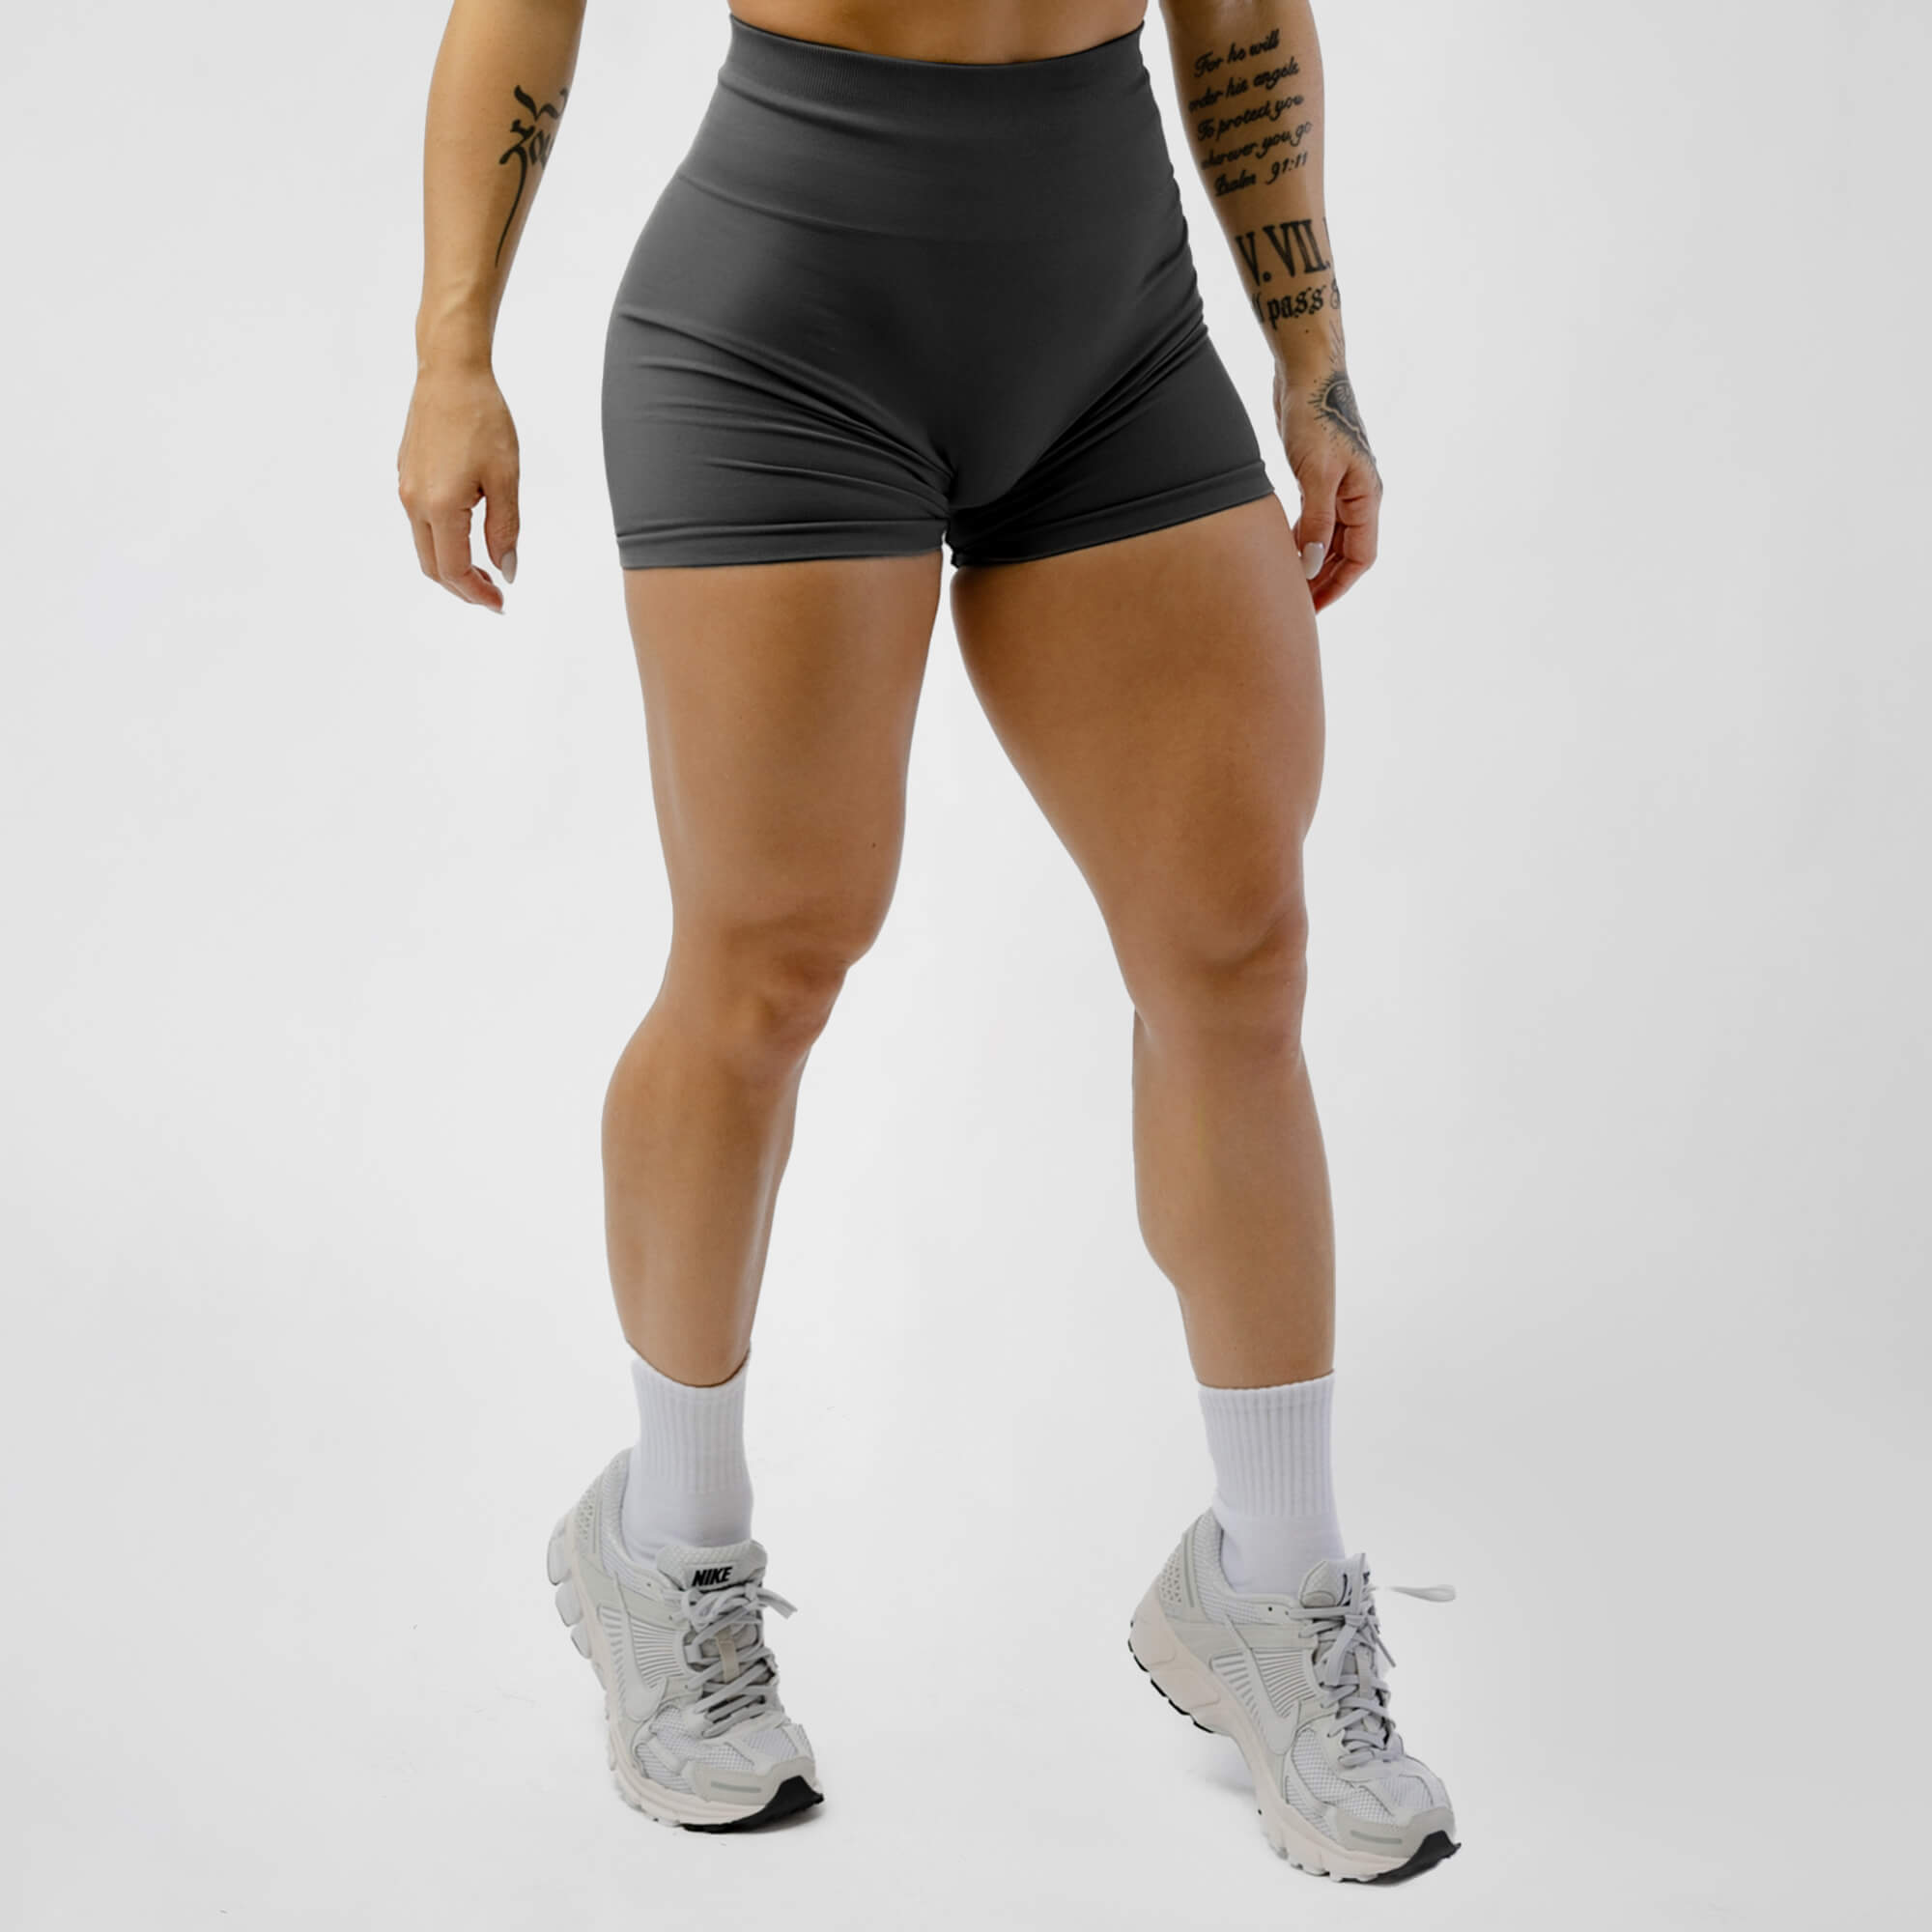 Gym Shorts Women -  Canada